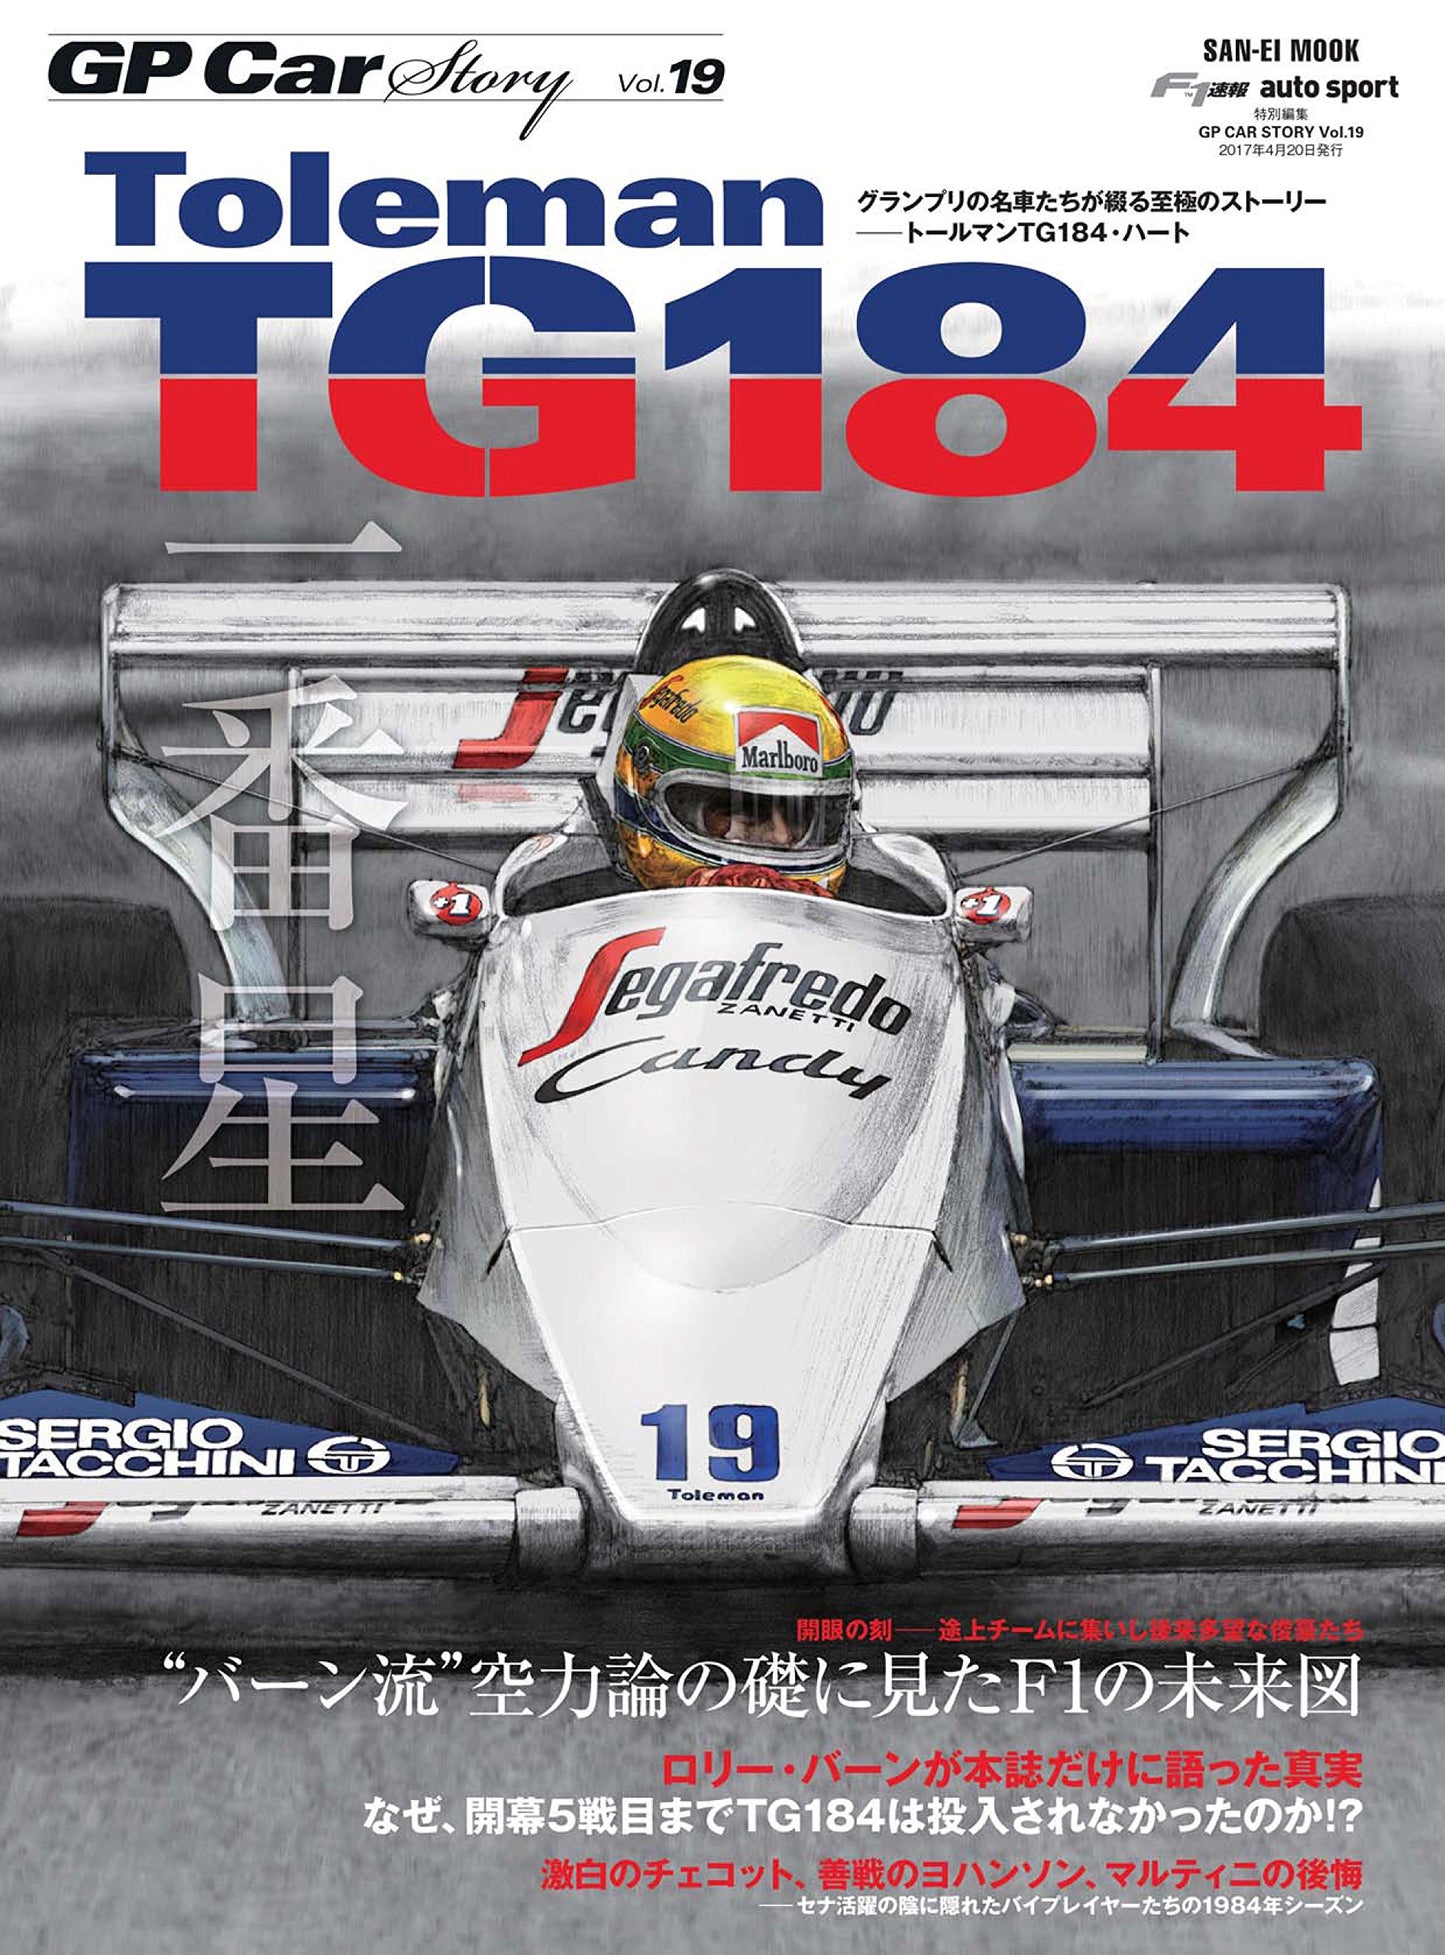 GP CAR STORY Vol. 19 Toleman TG184